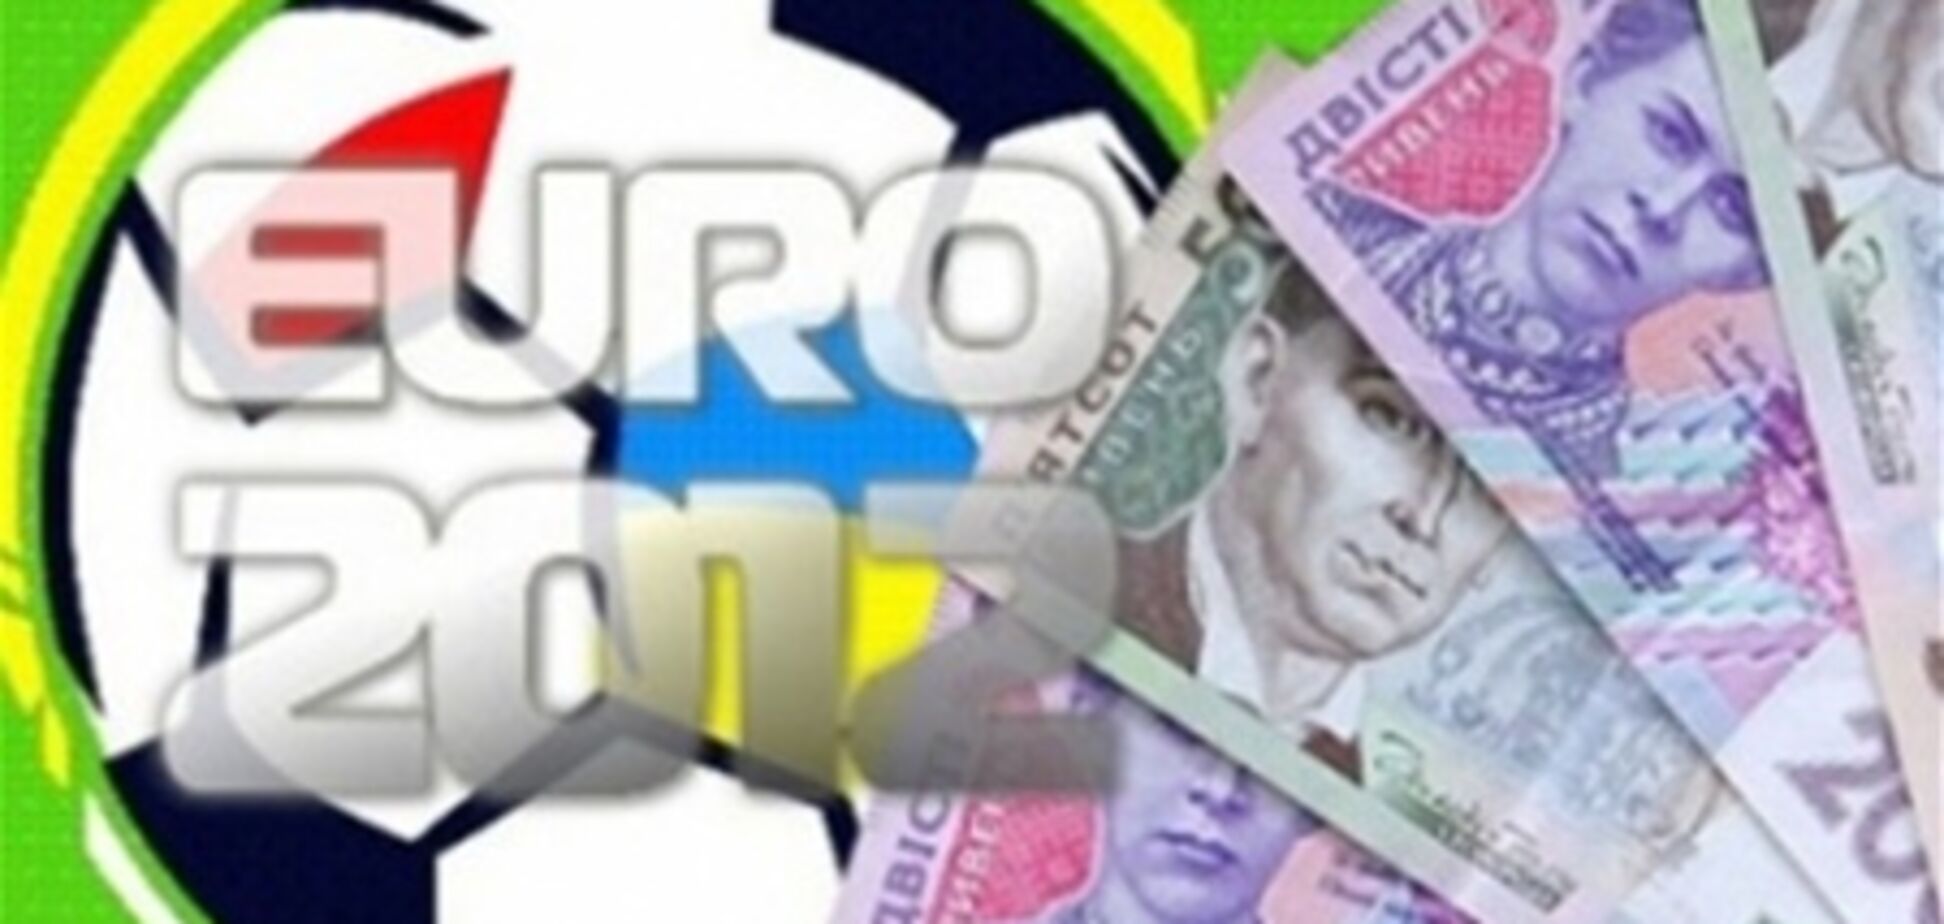 Евро-2012 увеличит реальное ВВП Украины